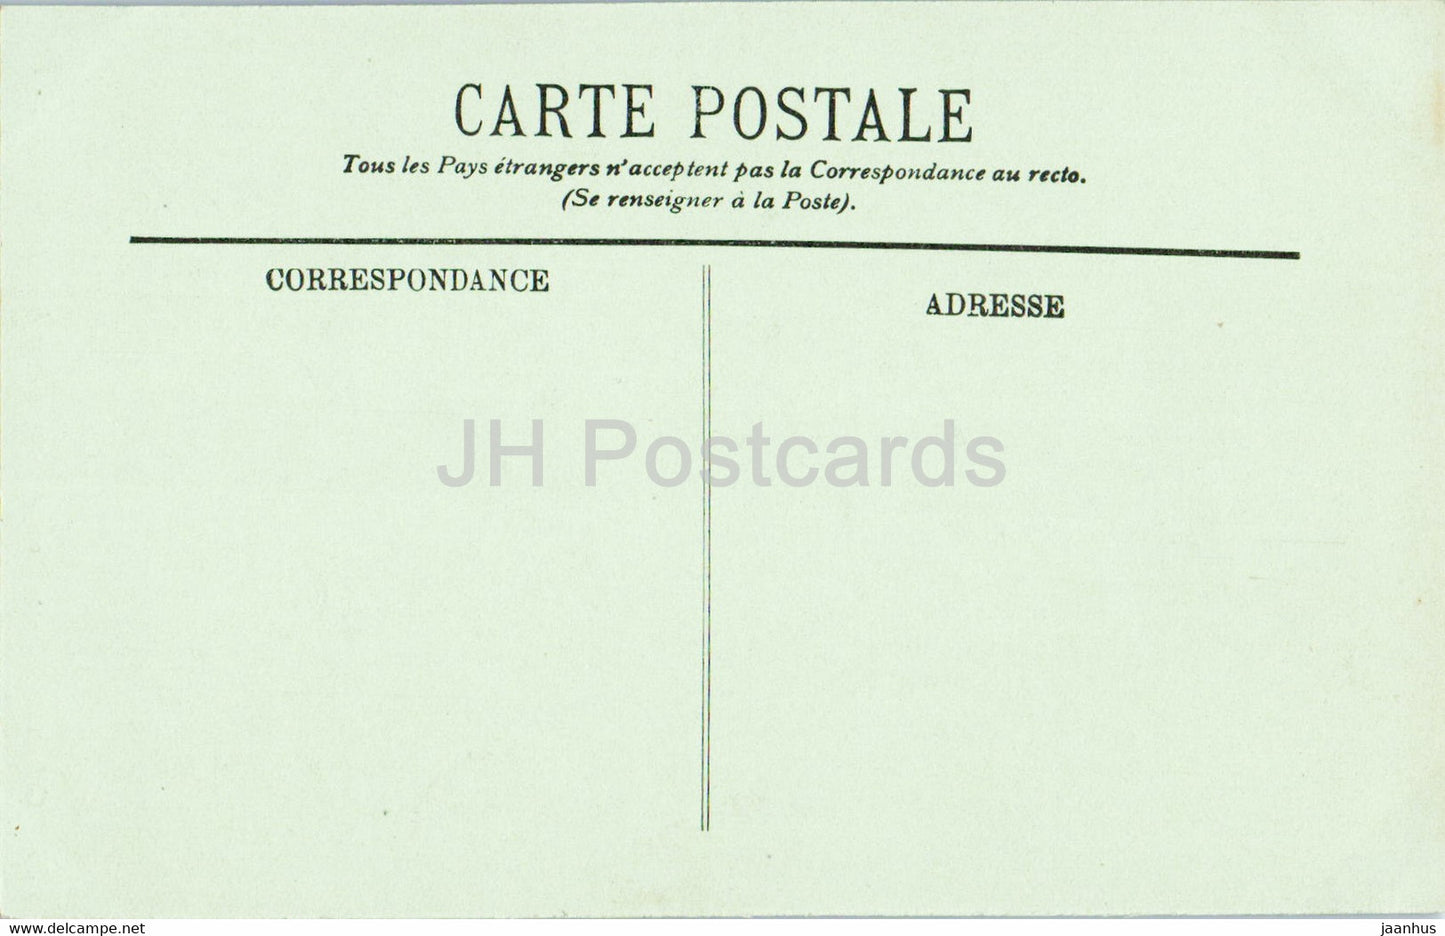 Chambery - La Tour d'Arche et l'entree de la Prefecture - 36 - old postcard - 1916 - France - used